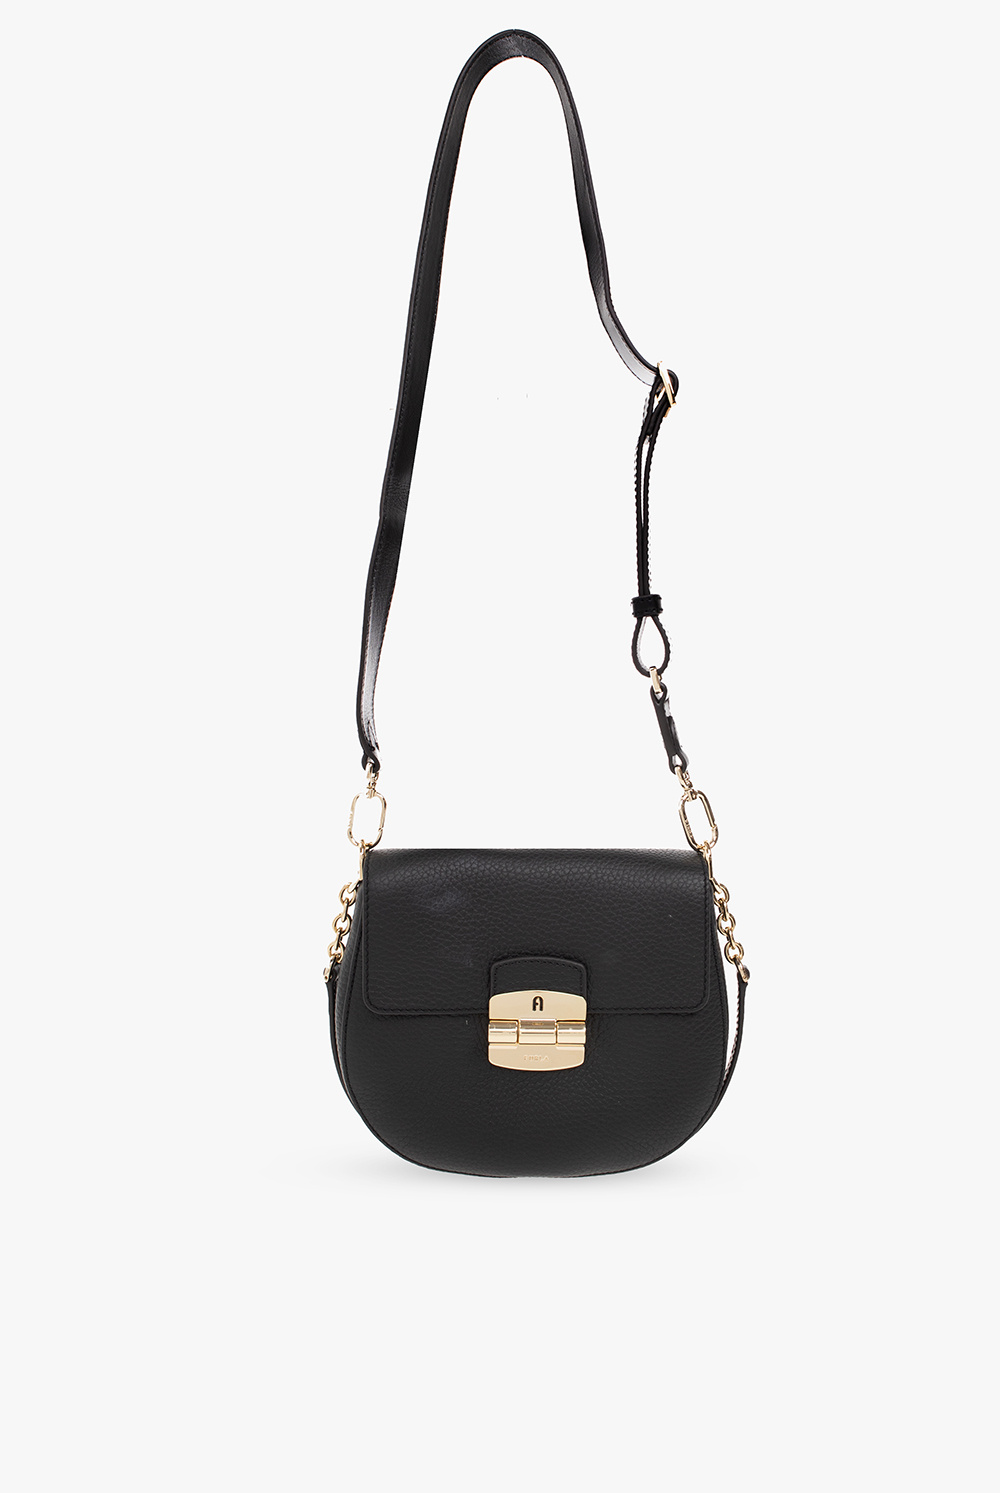 Furla ‘Club 2 Mini’ shoulder bag